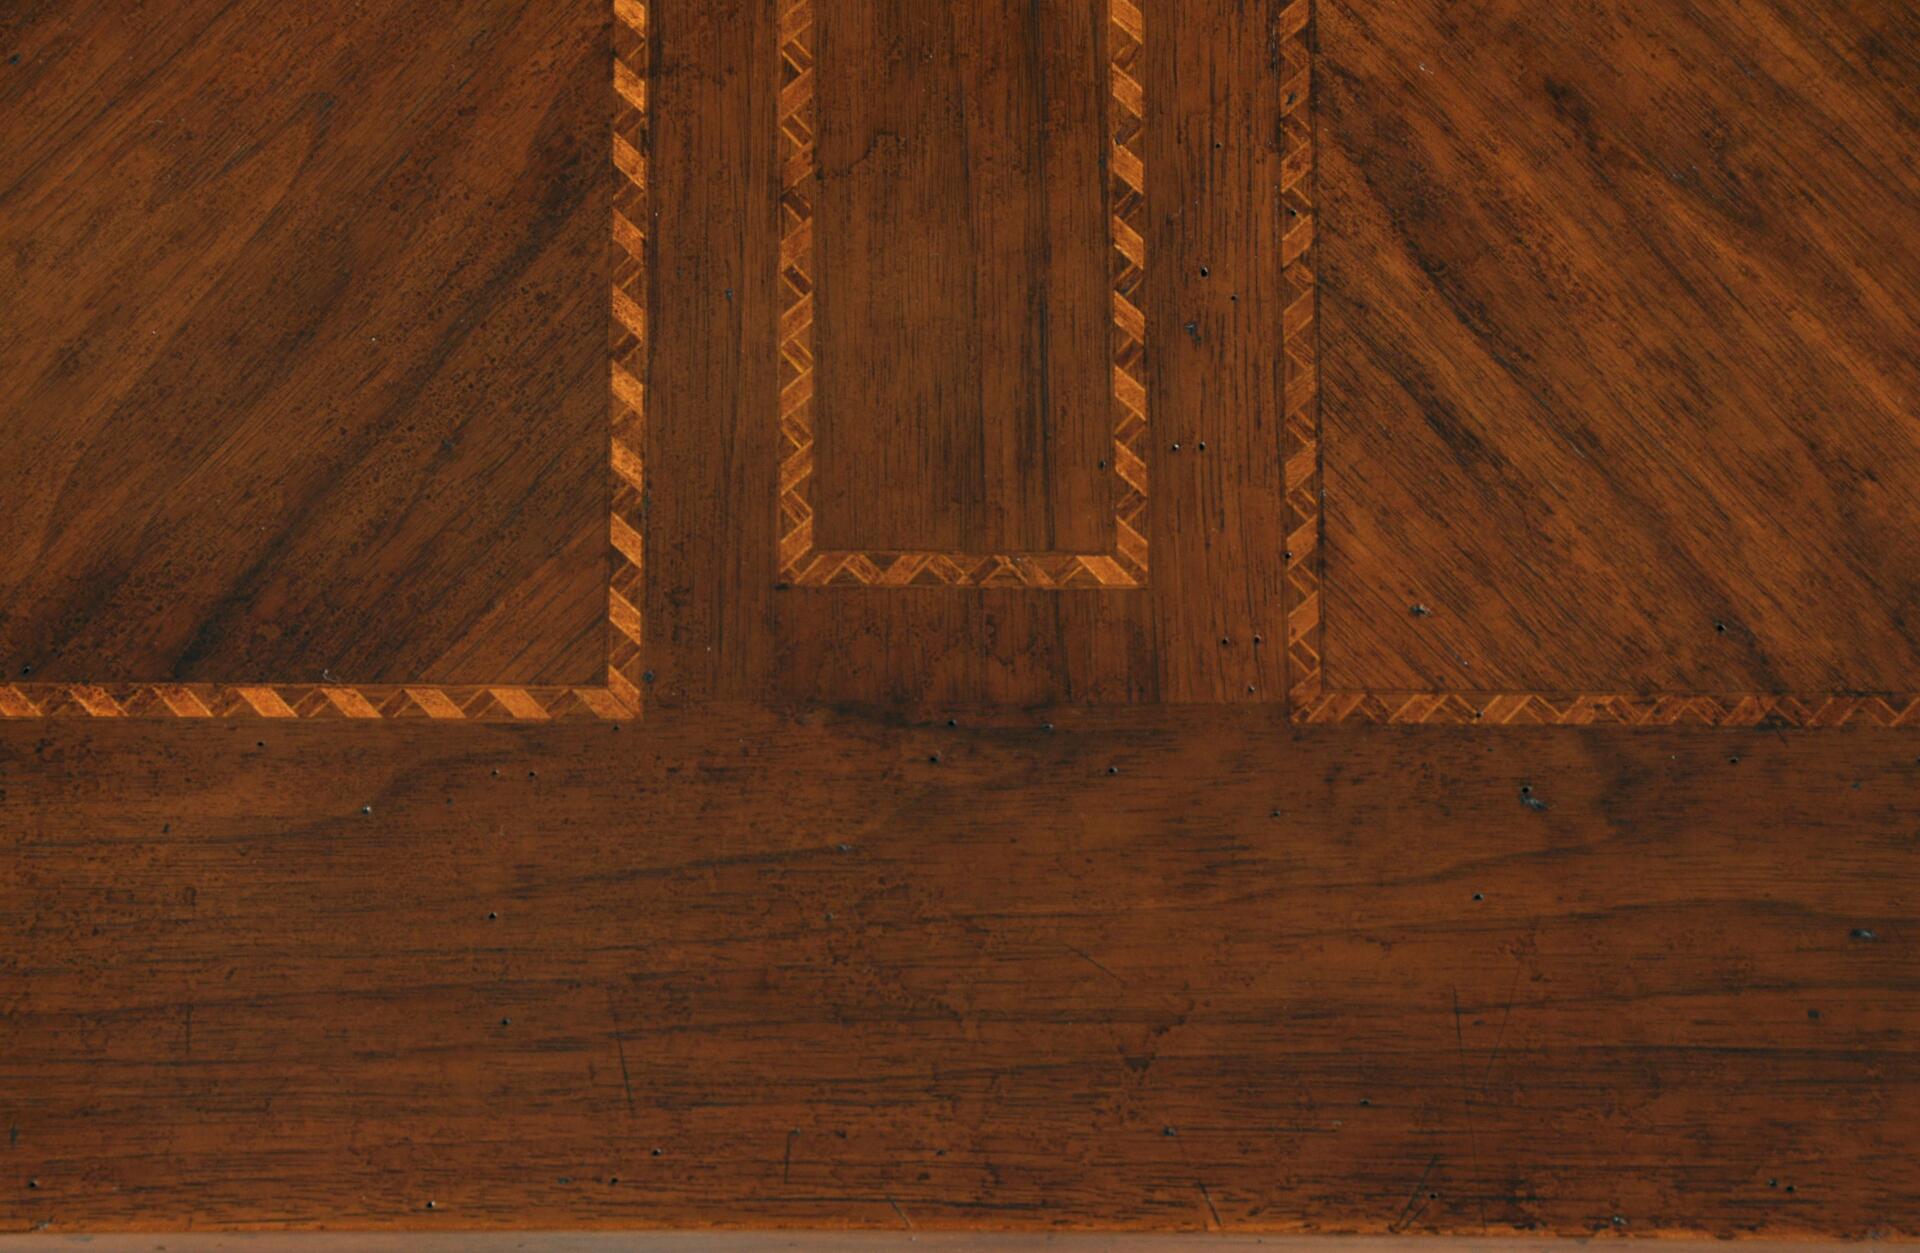 intarsio in acero, palissandro e ciliegio a forma di rombo in legni pregiati esotici, spessore grosso di 4 millimetri lastronato a mano